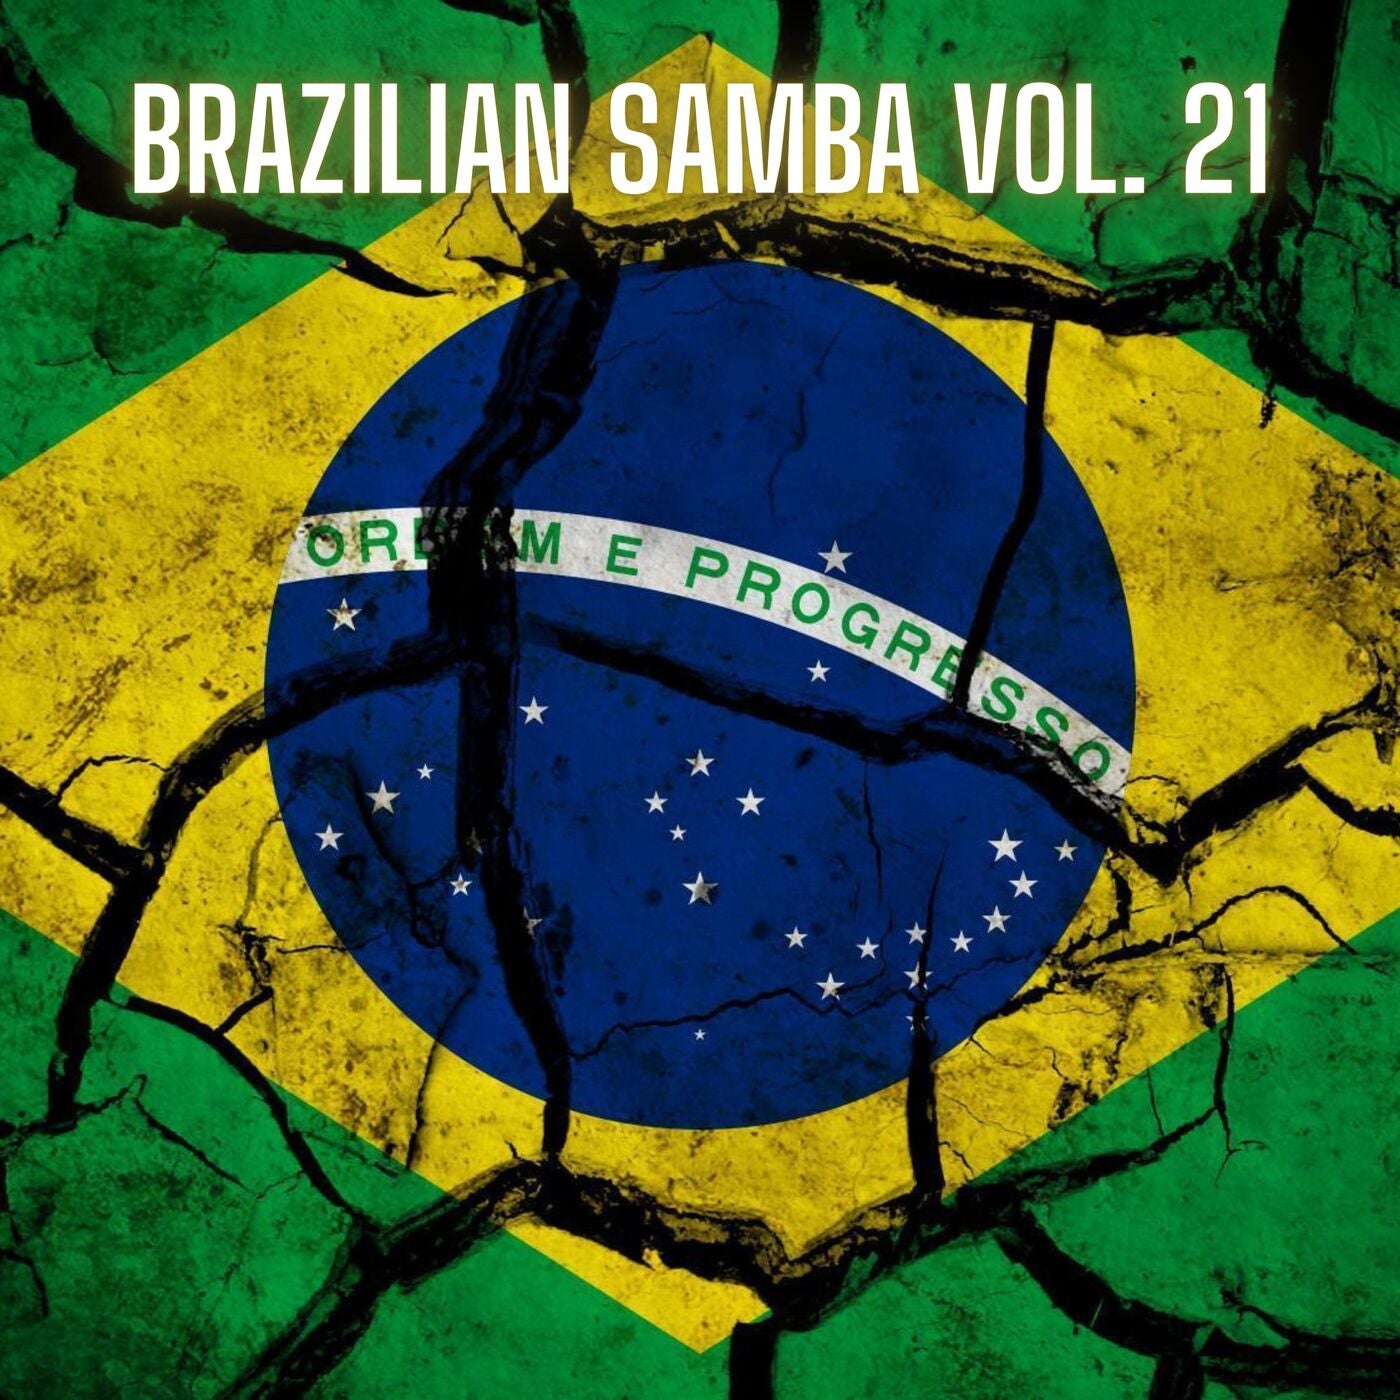 Brazilian Samba Vol. 21